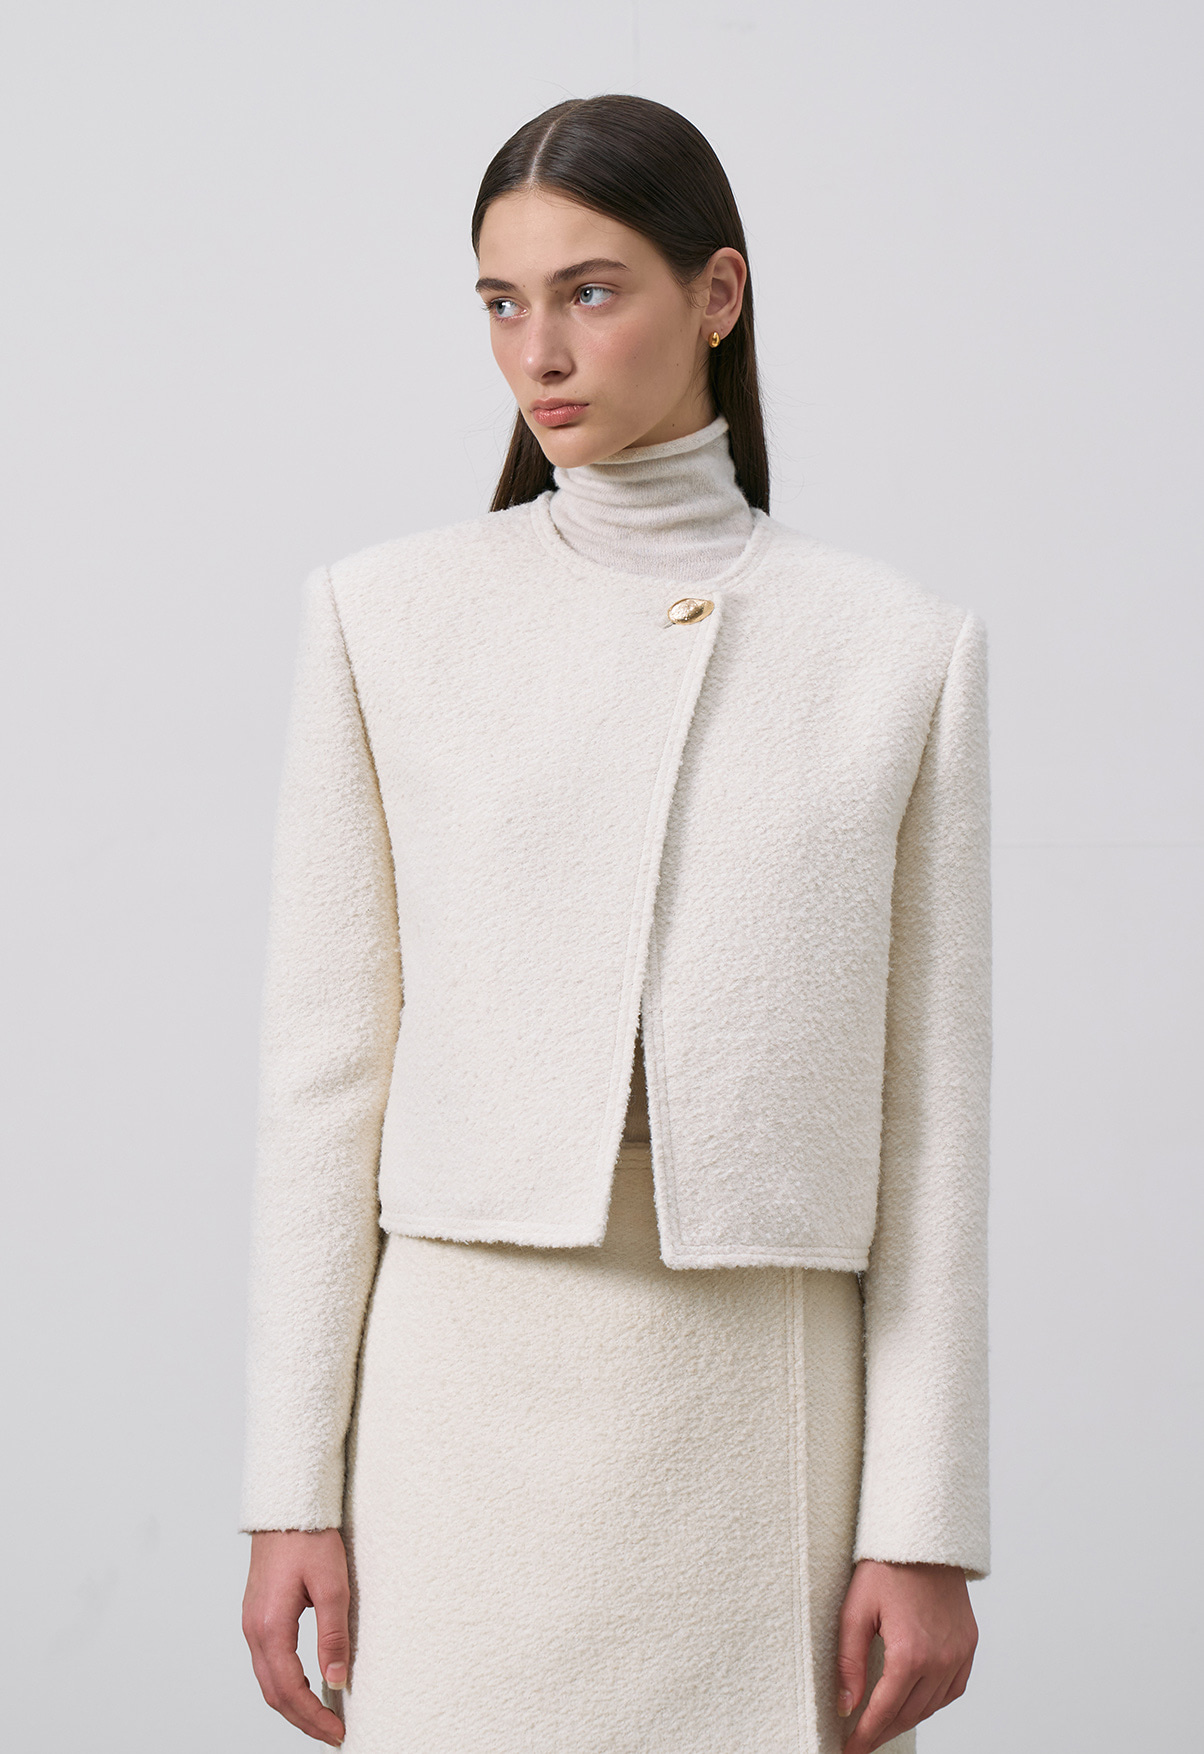 Wool Tweed Jacket